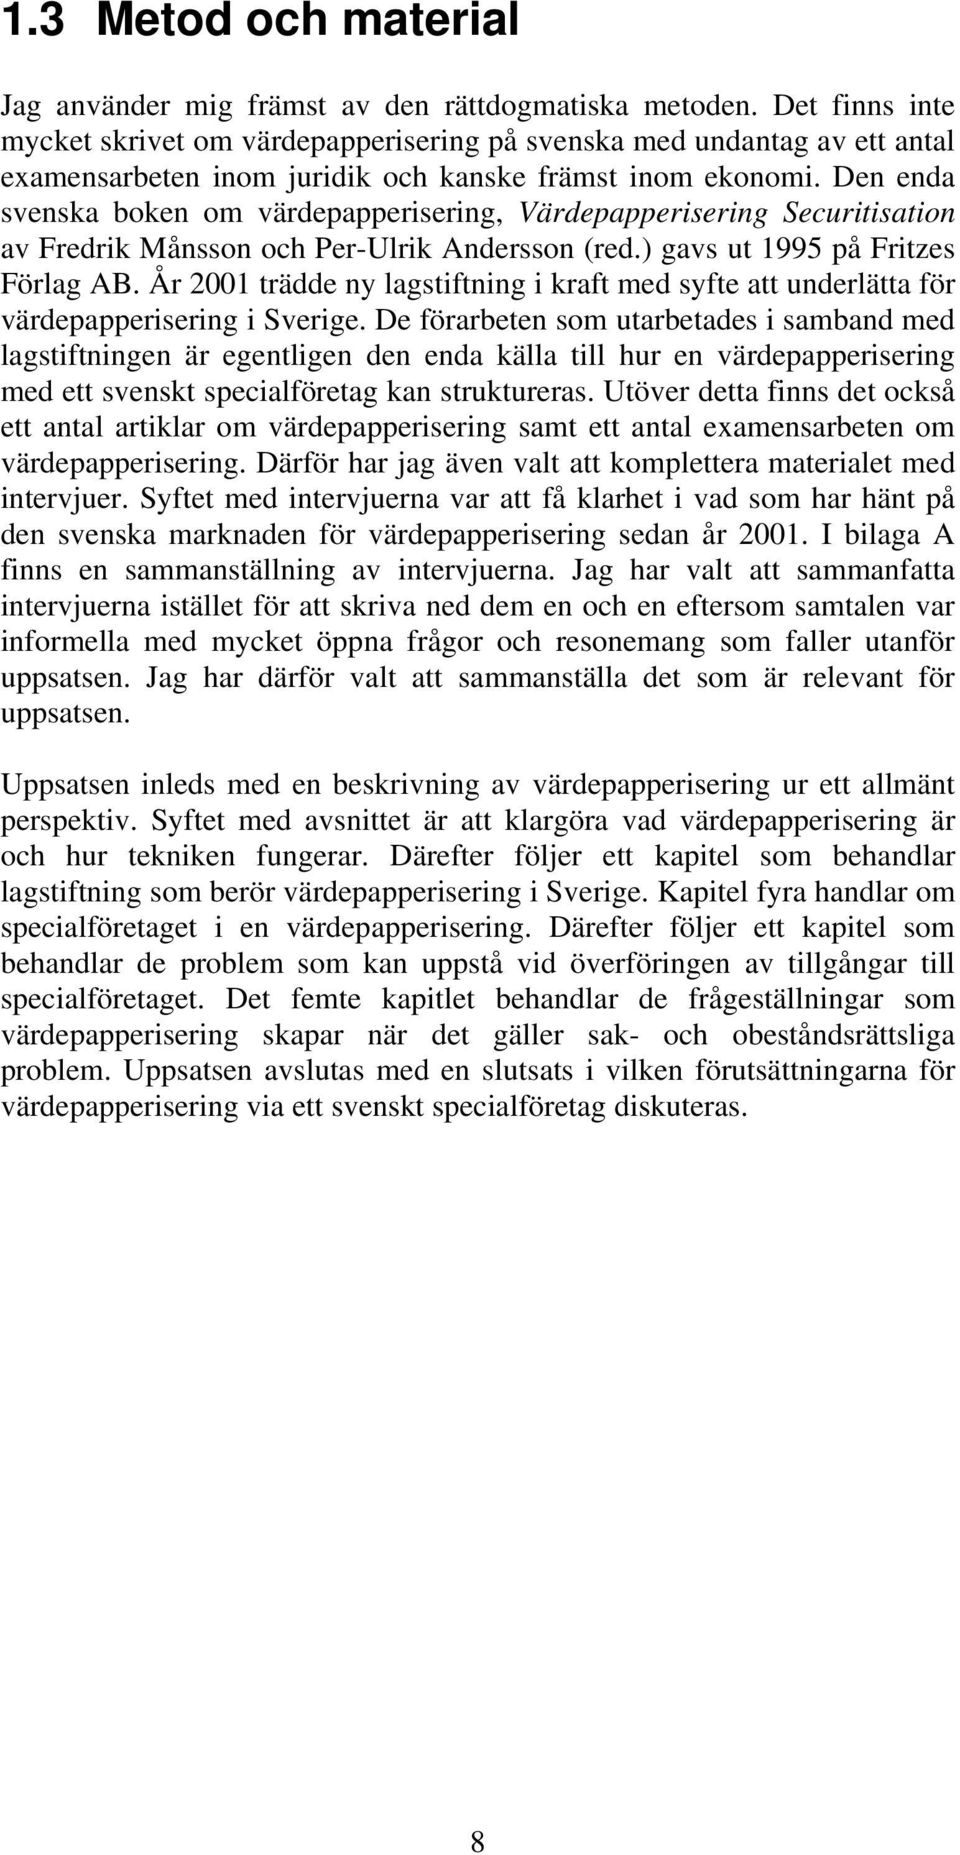 Den enda svenska boken om värdepapperisering, Värdepapperisering Securitisation av Fredrik Månsson och Per-Ulrik Andersson (red.) gavs ut 1995 på Fritzes Förlag AB.